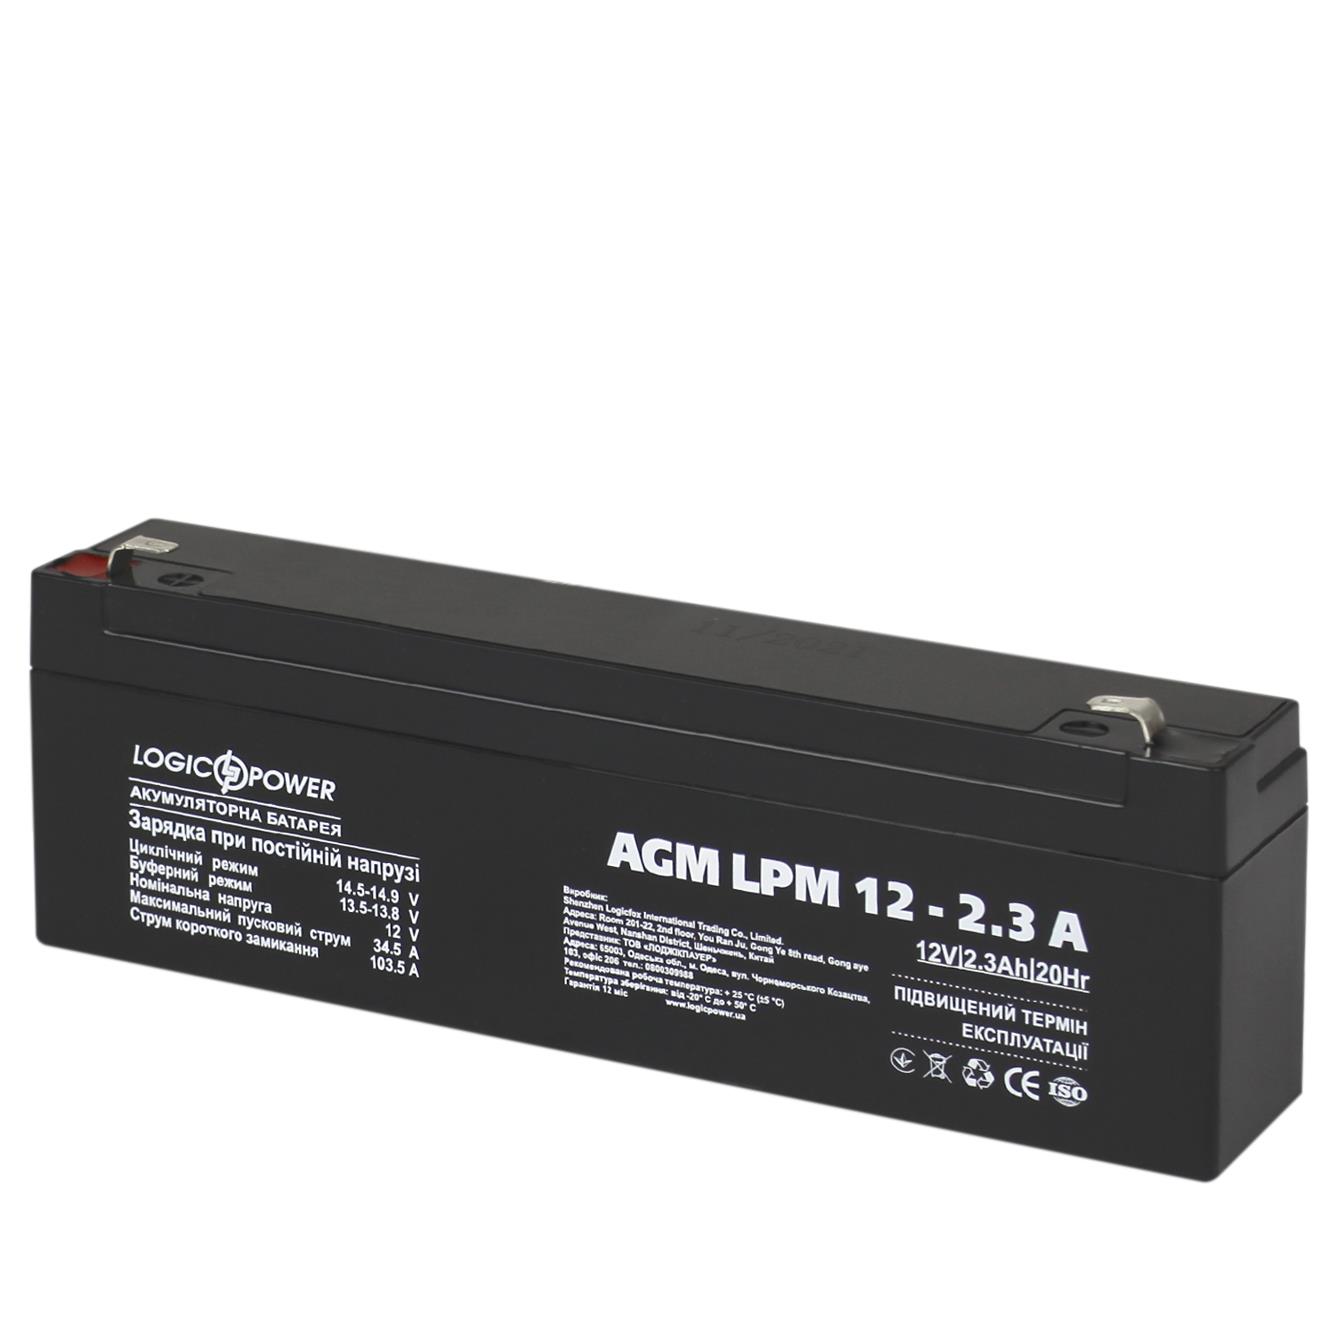 Отзывы аккумулятор свинцово-кислотный LogicPower AGM LPM 12V - 2.3 Ah (4132) в Украине